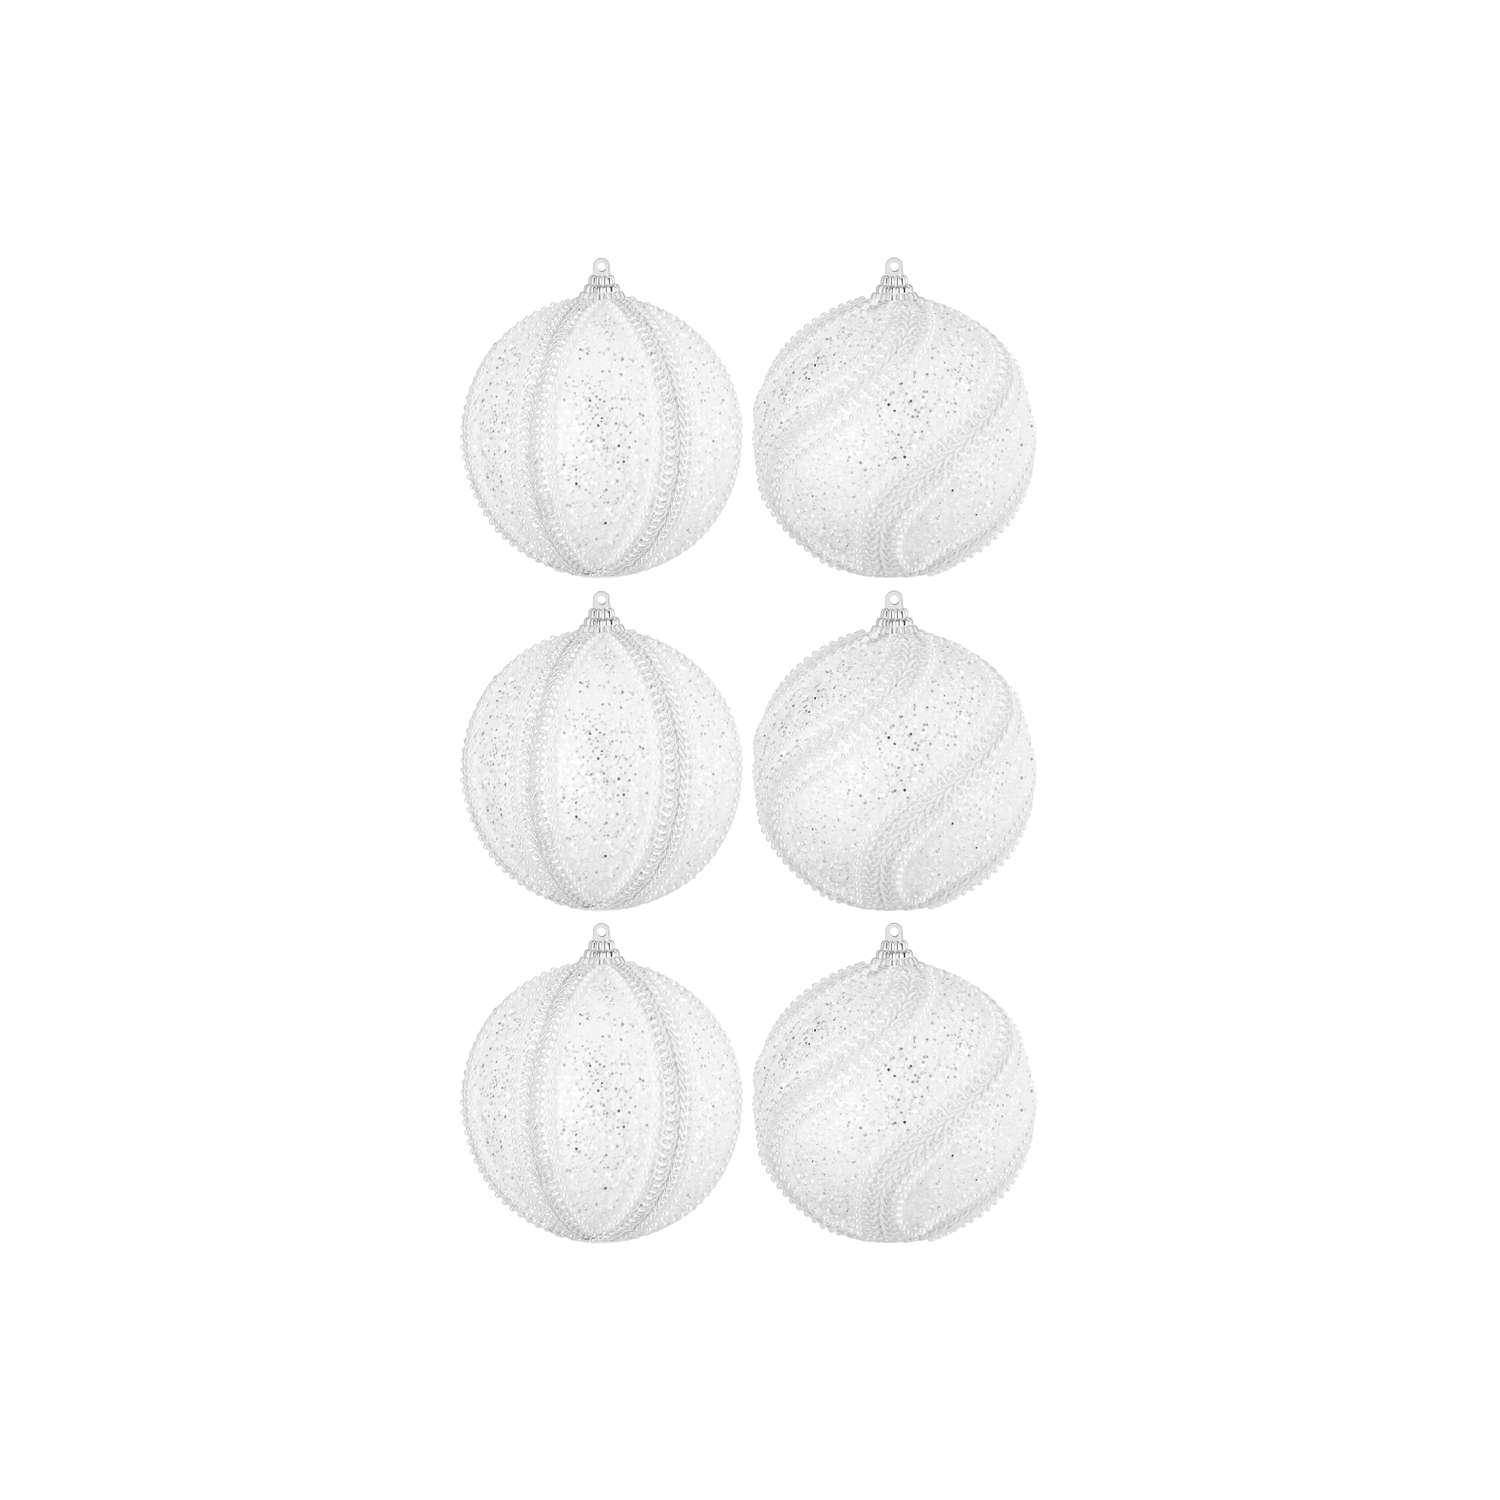 Набор Elan Gallery 6 новогодних шаров 9.5х9.5 см Жемчужины на белом - фото 4